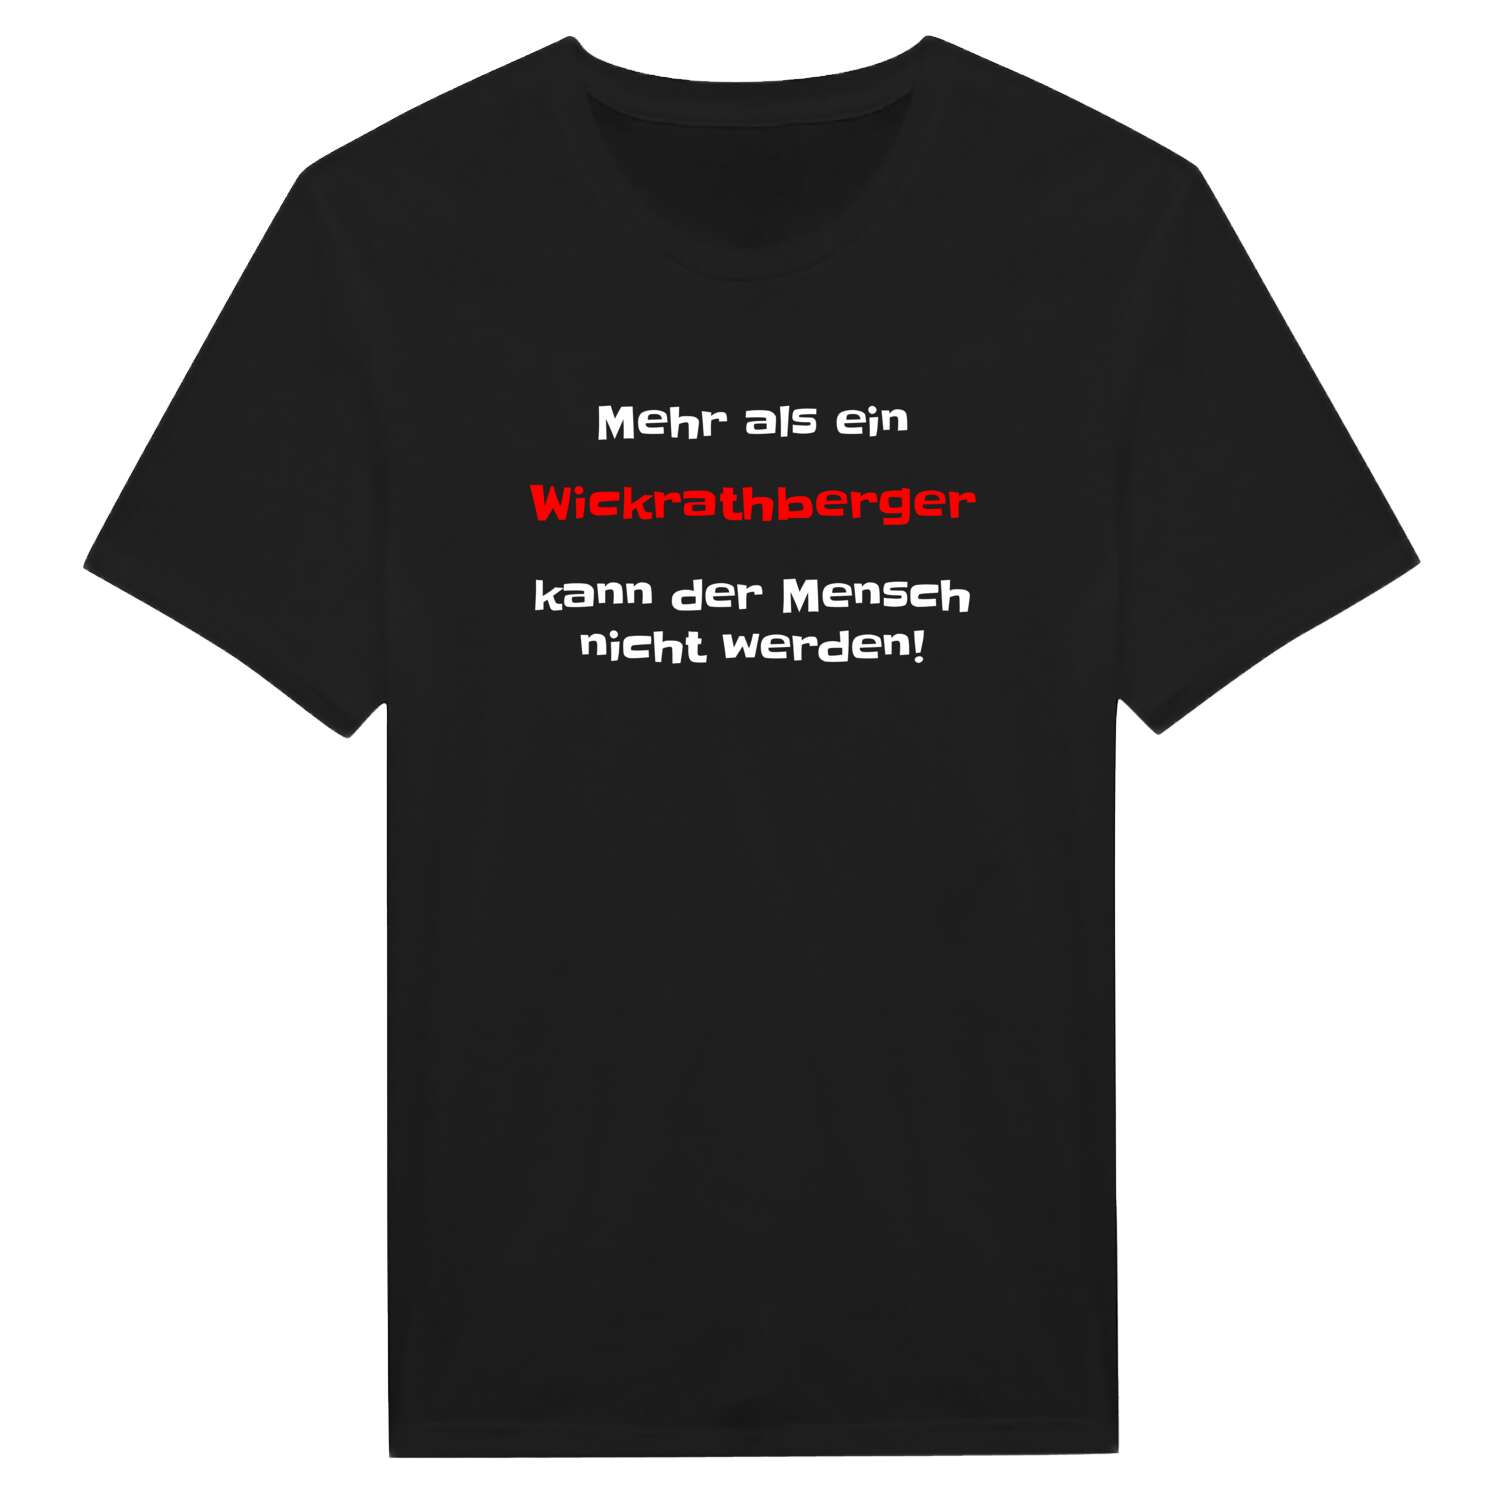 Wickrathberg T-Shirt »Mehr als ein«